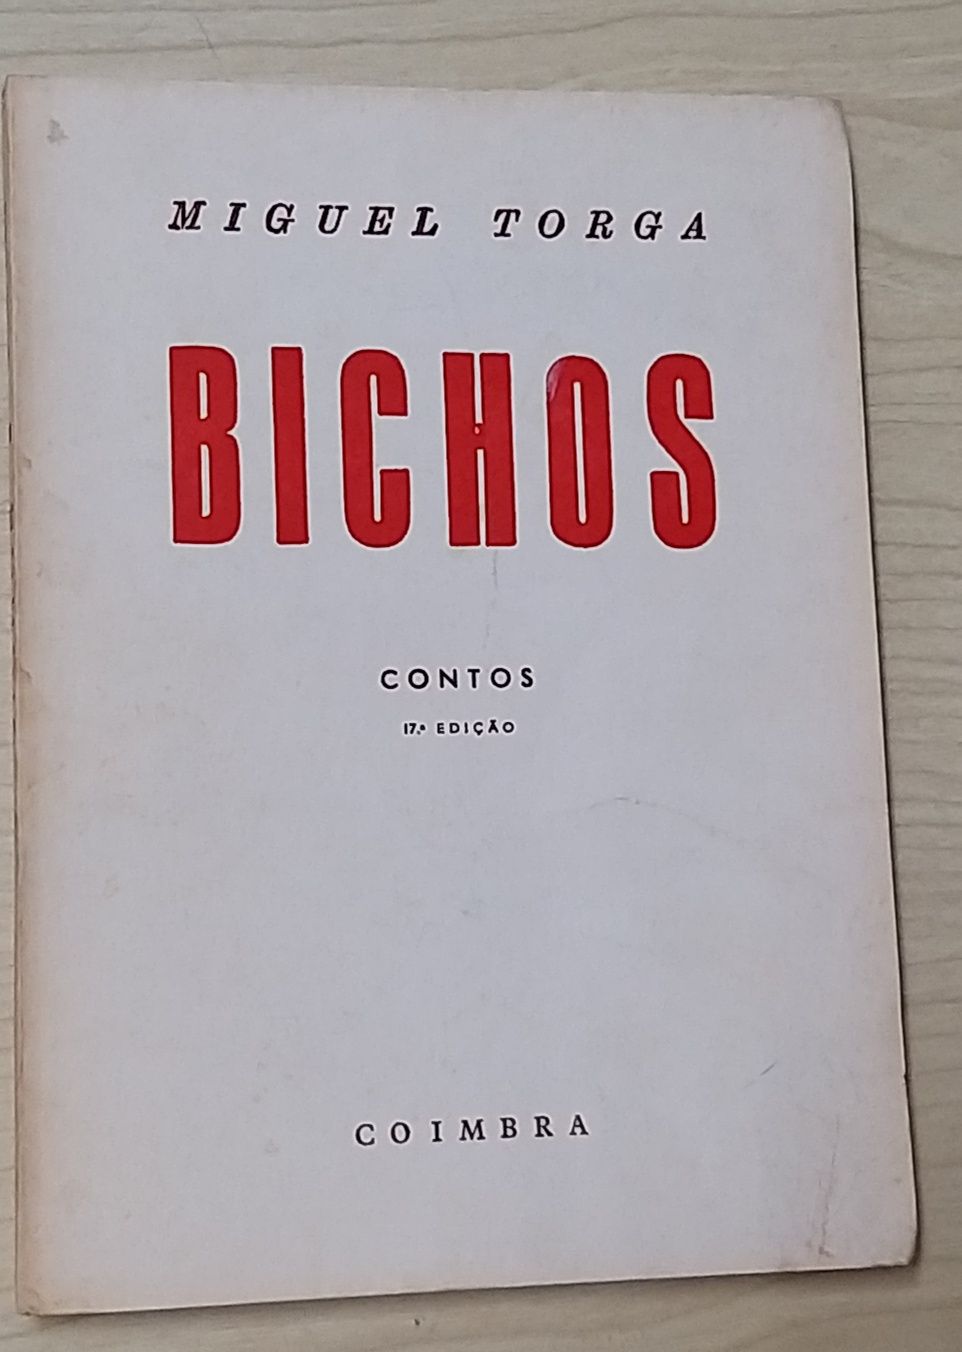 Os Bichos de Miguel Torga.